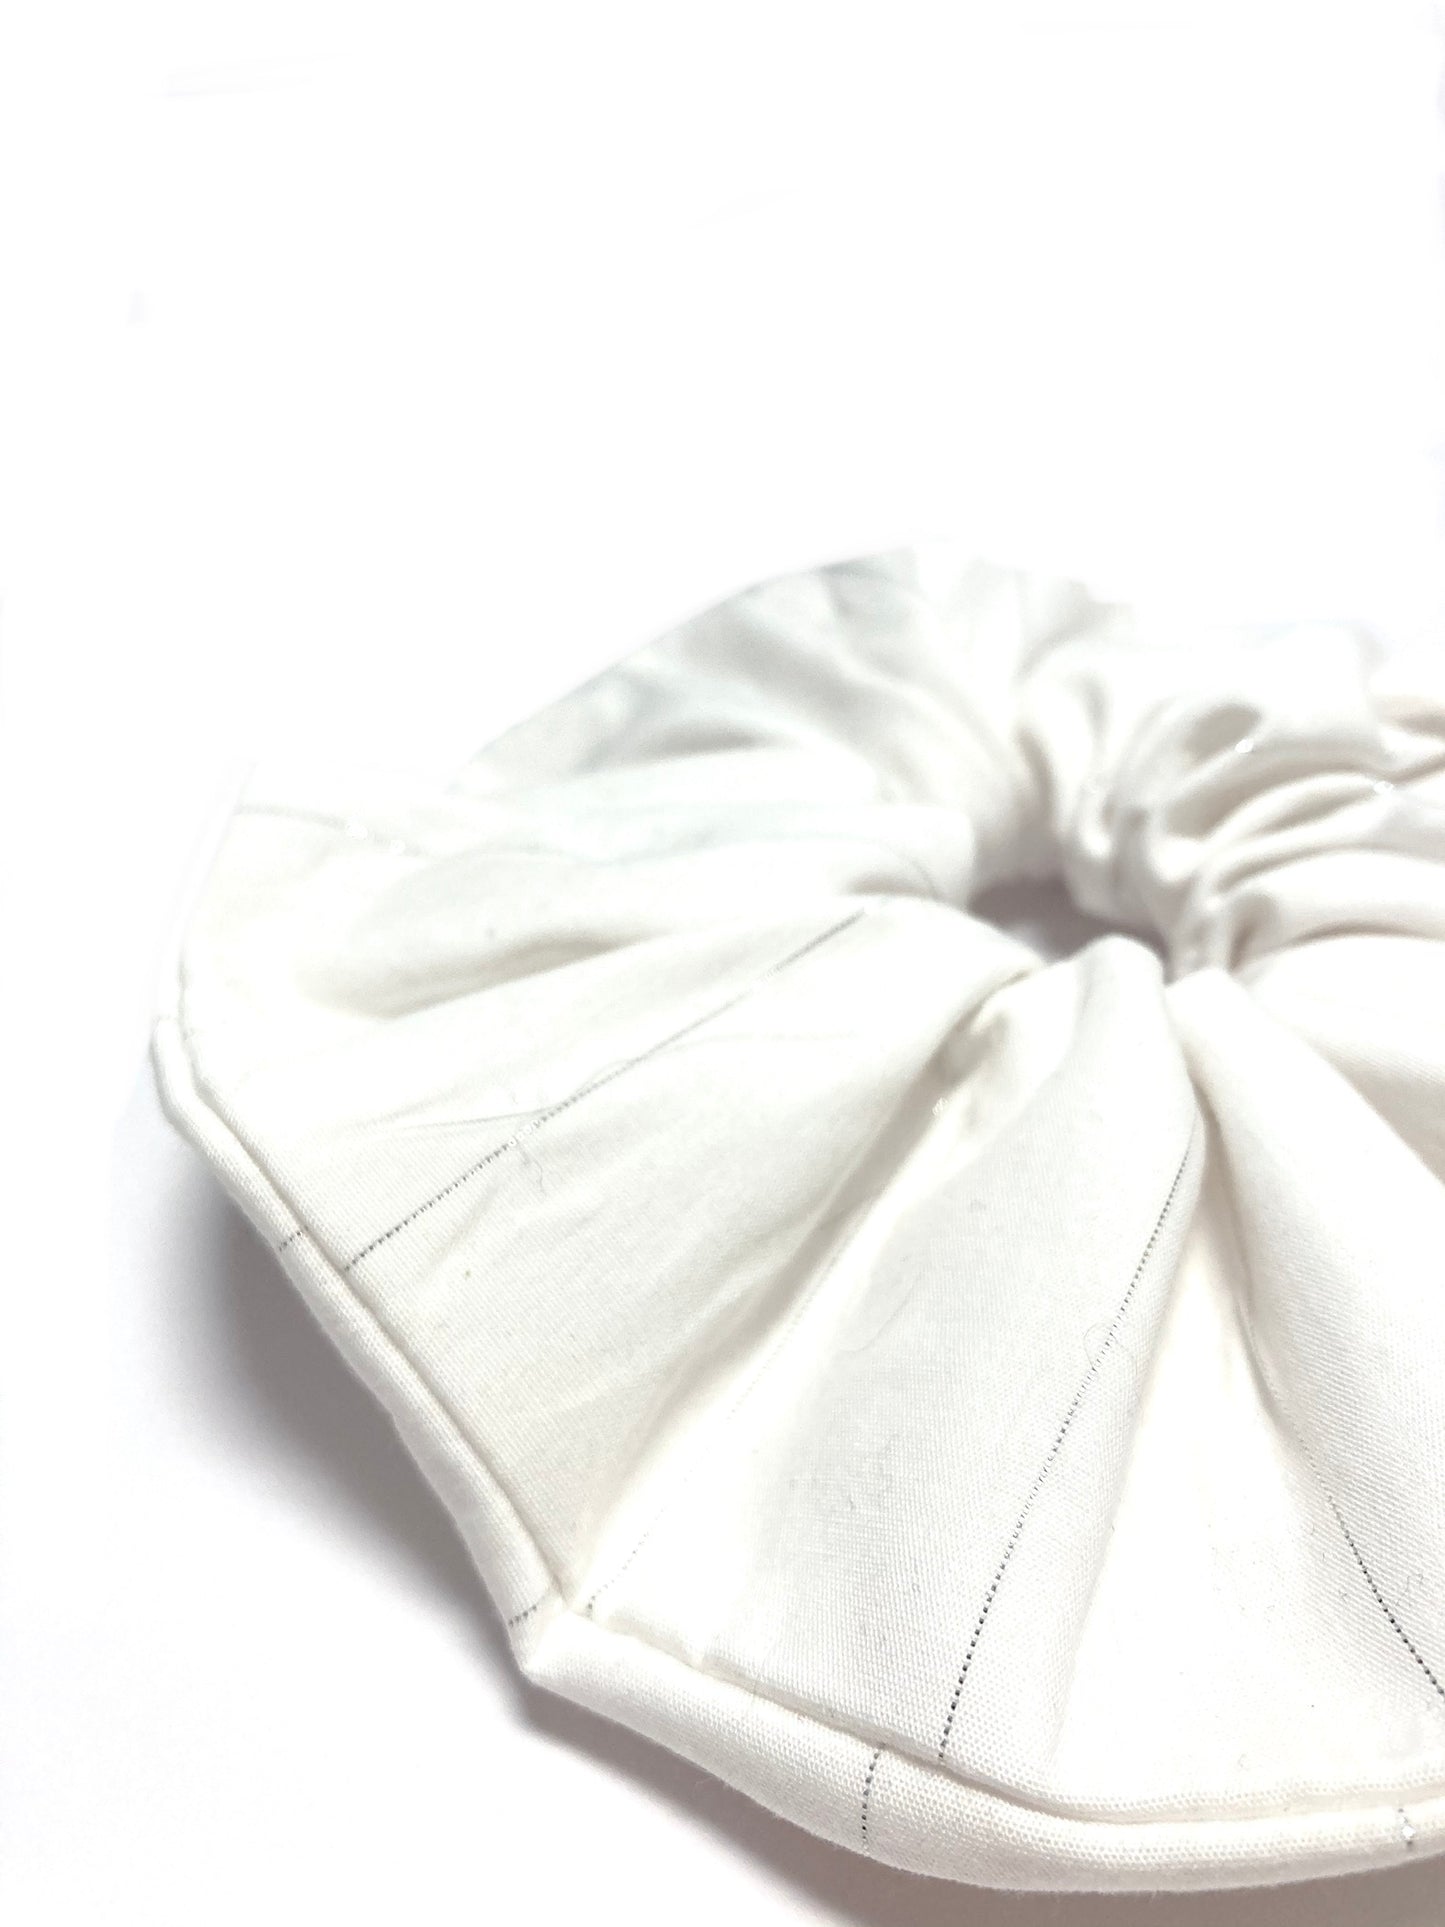 White wedding scrunchie